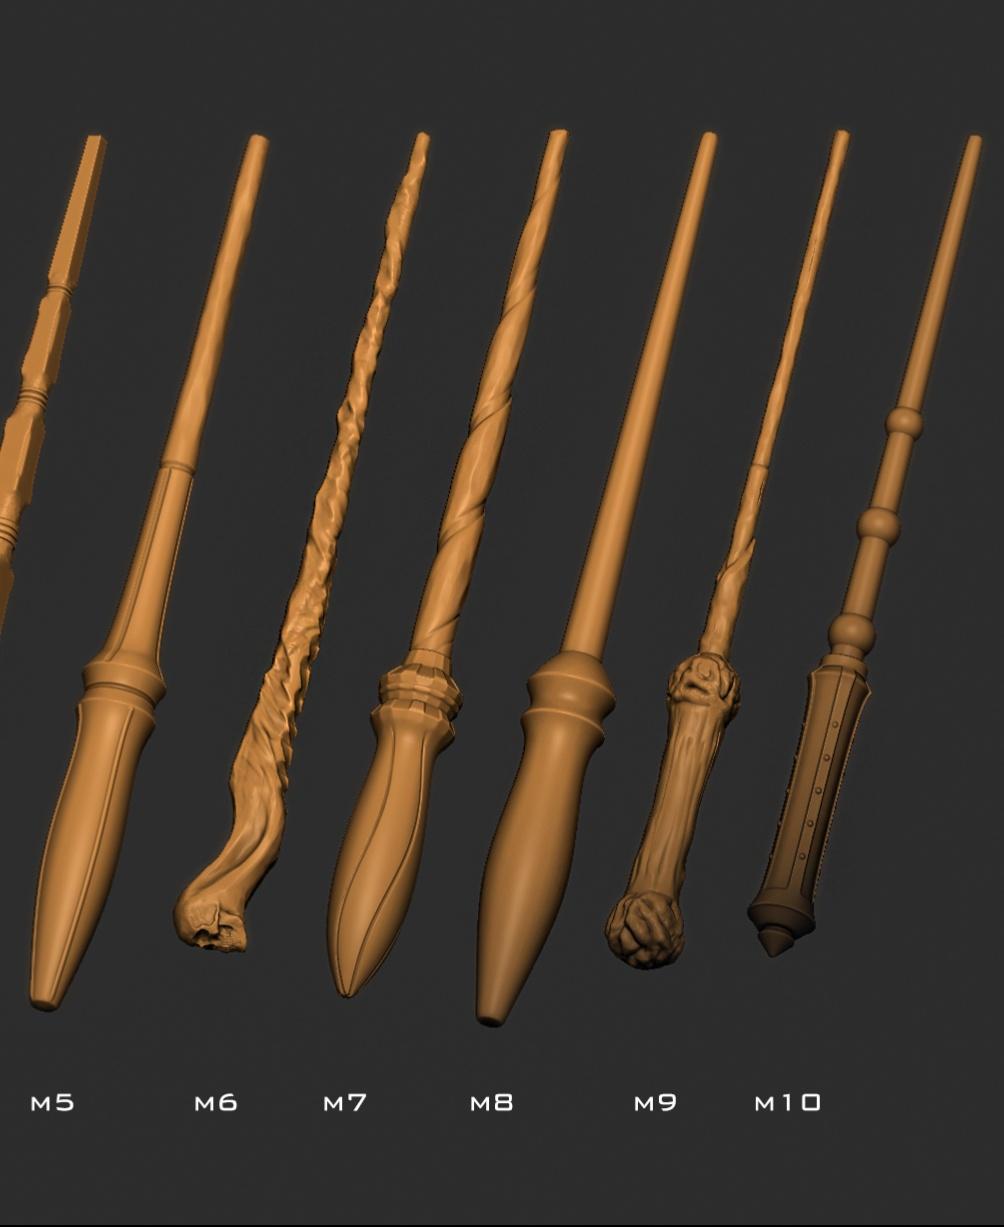 Custom wand set 3d model